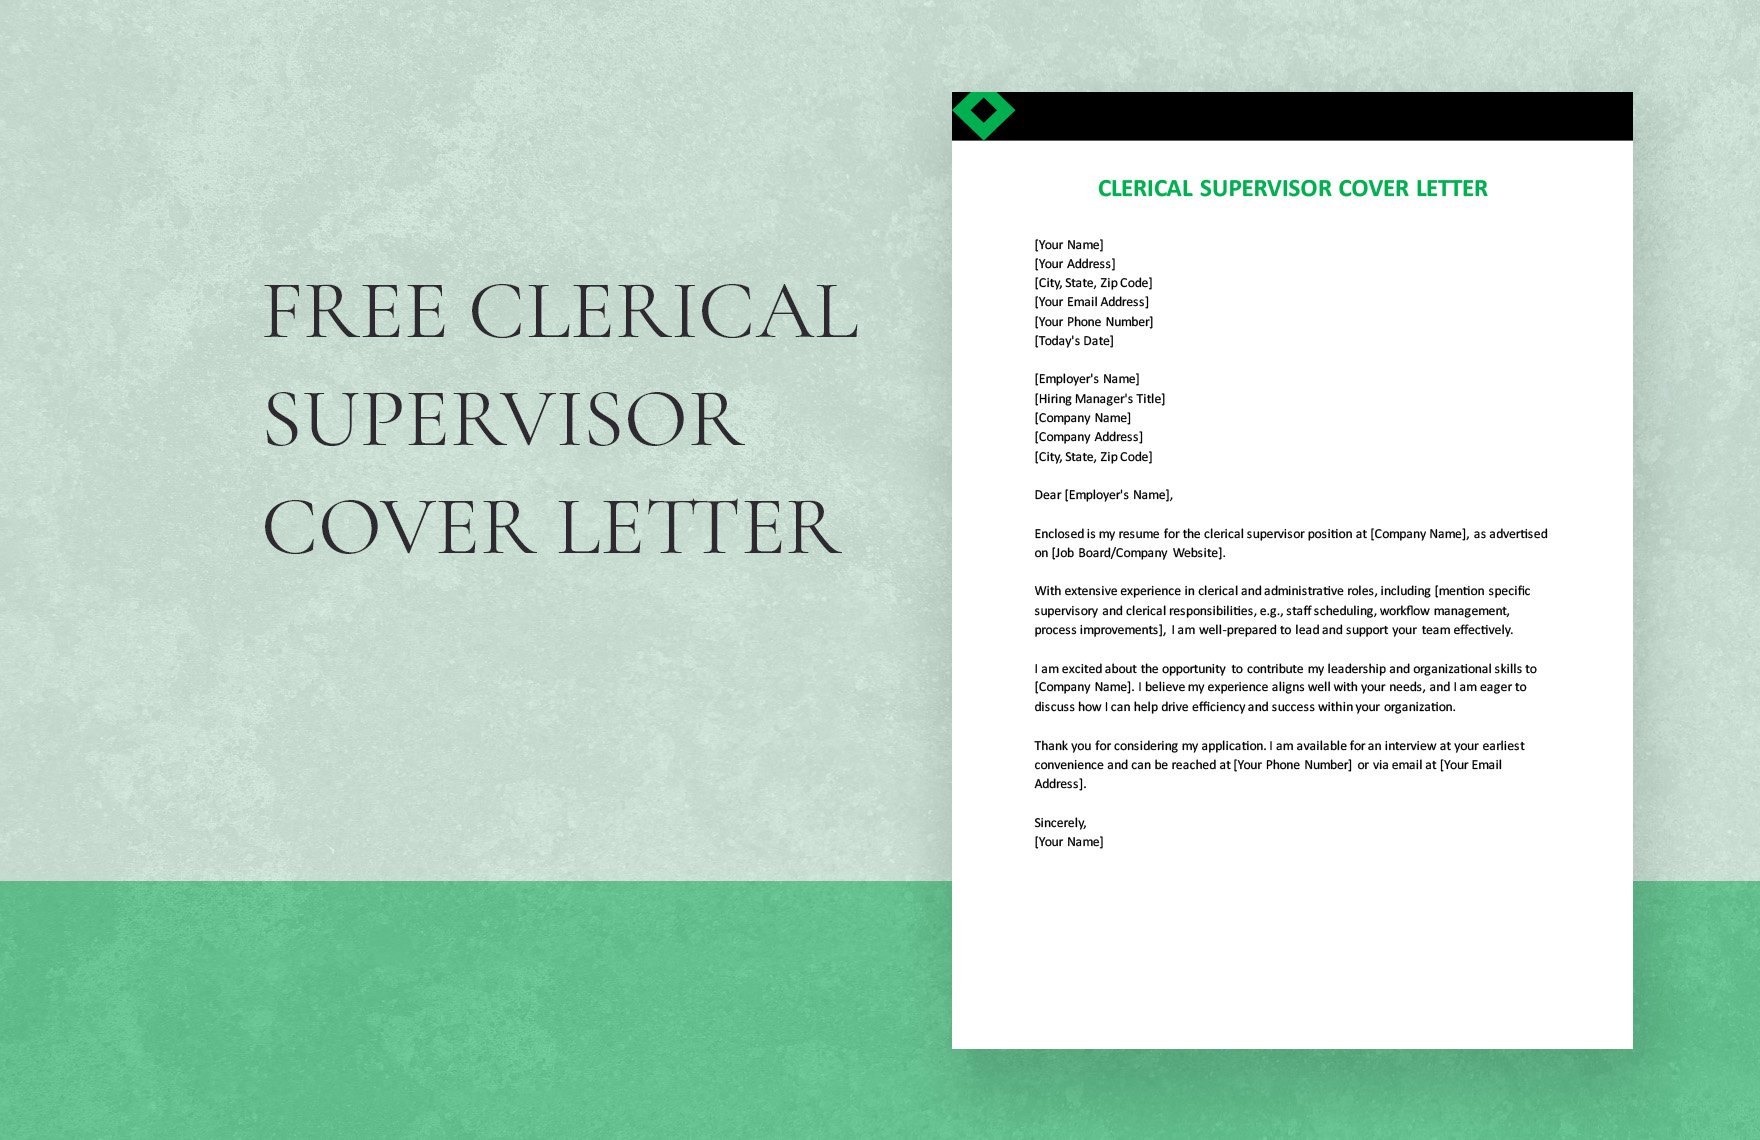 Clerical Supervisor Cover Letter